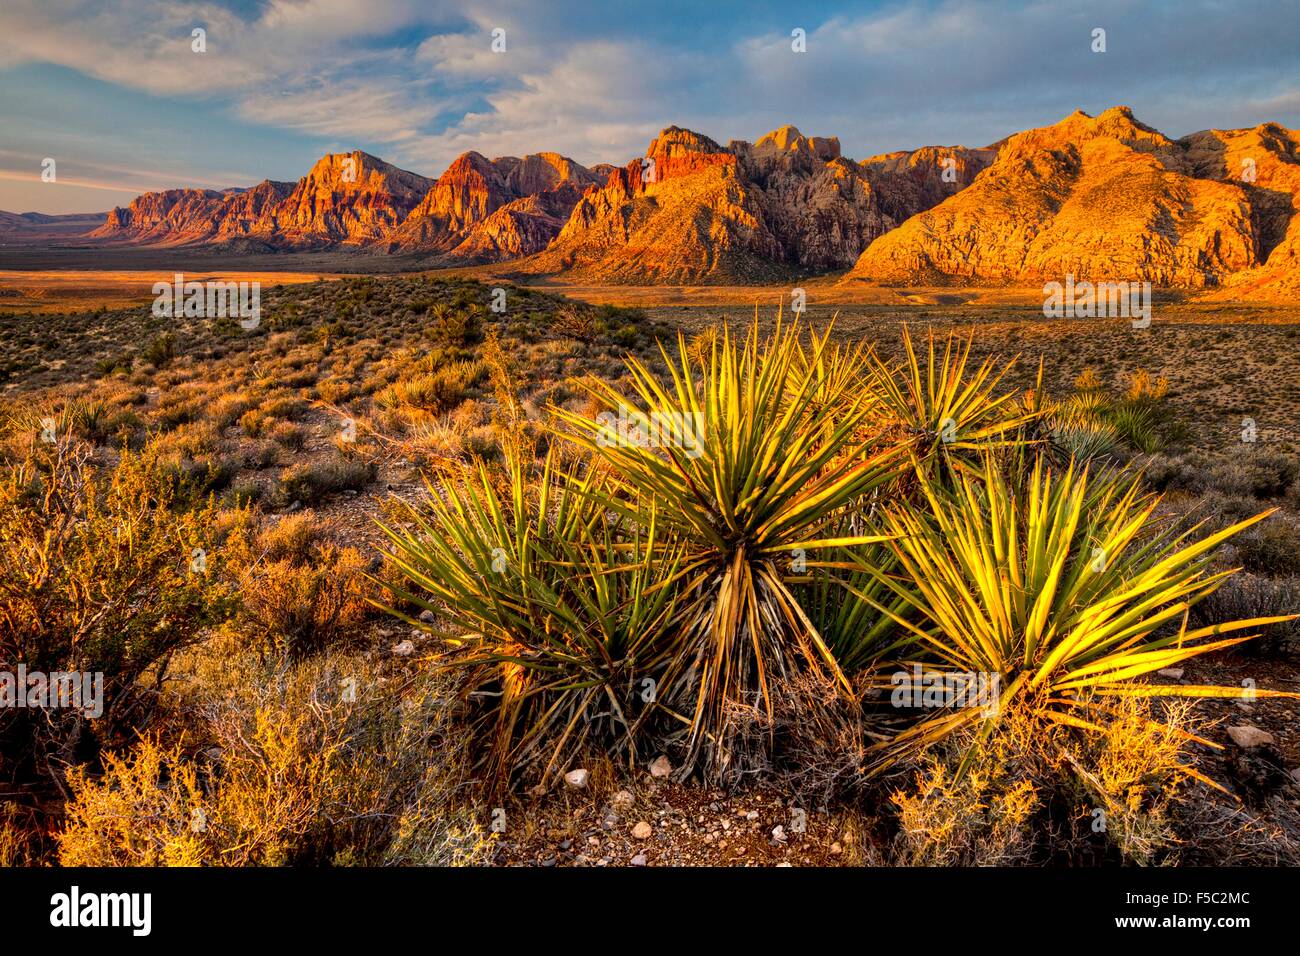 Dans les lances du yucca Red Rock Canyon National Conservation Area près de Las Vegas, Nevada. Banque D'Images